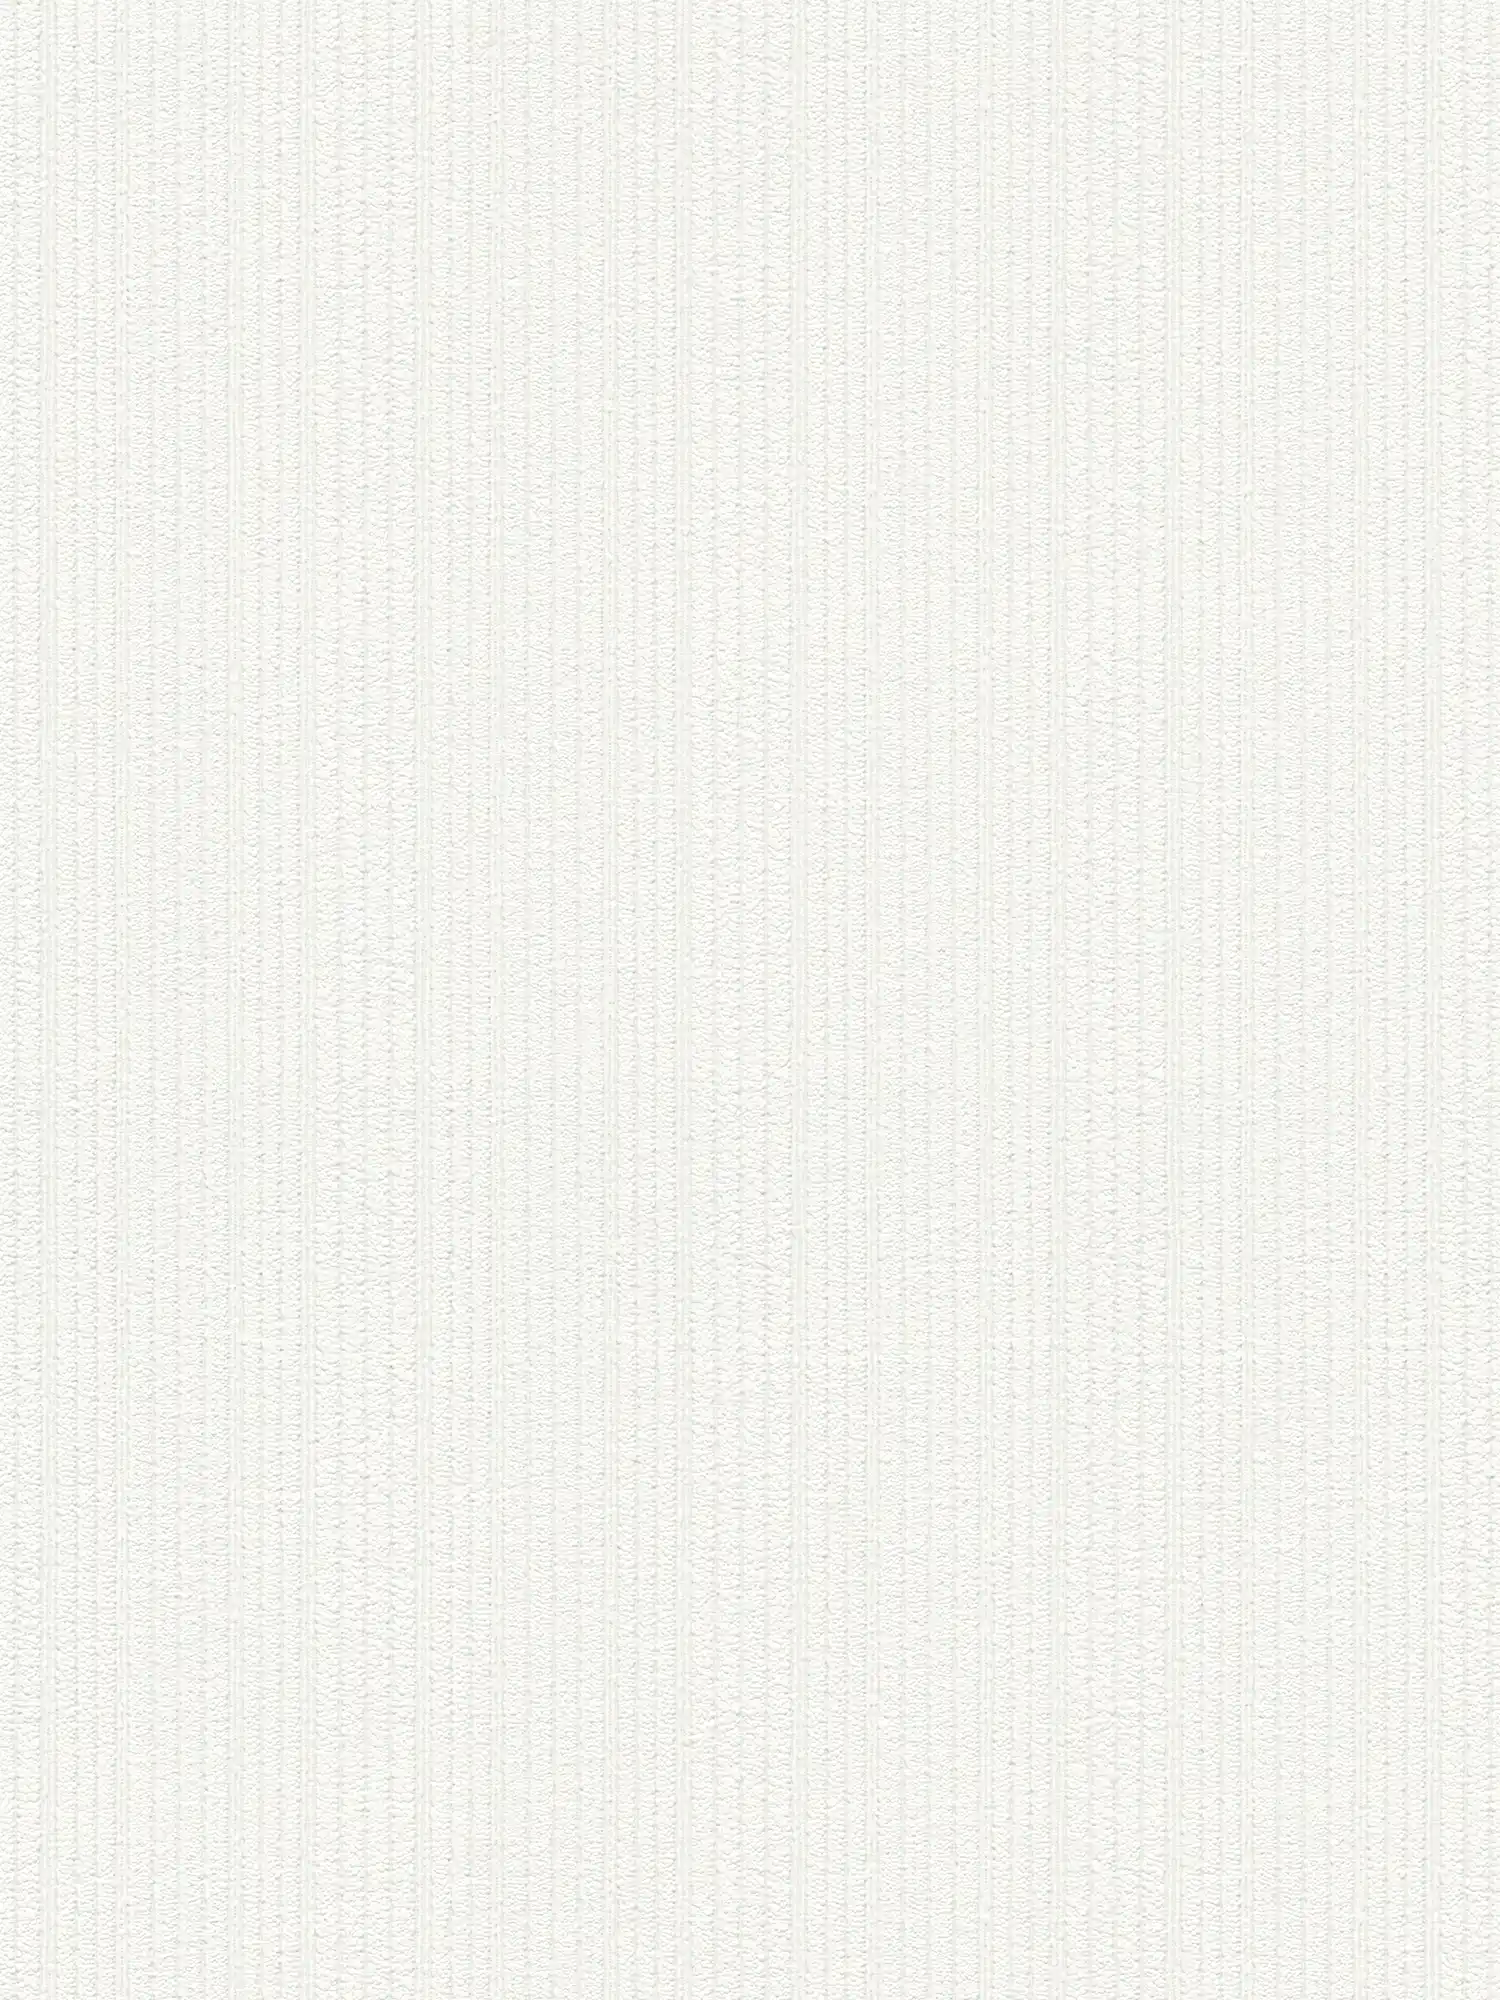 White wallpaper with textured stripes - white
